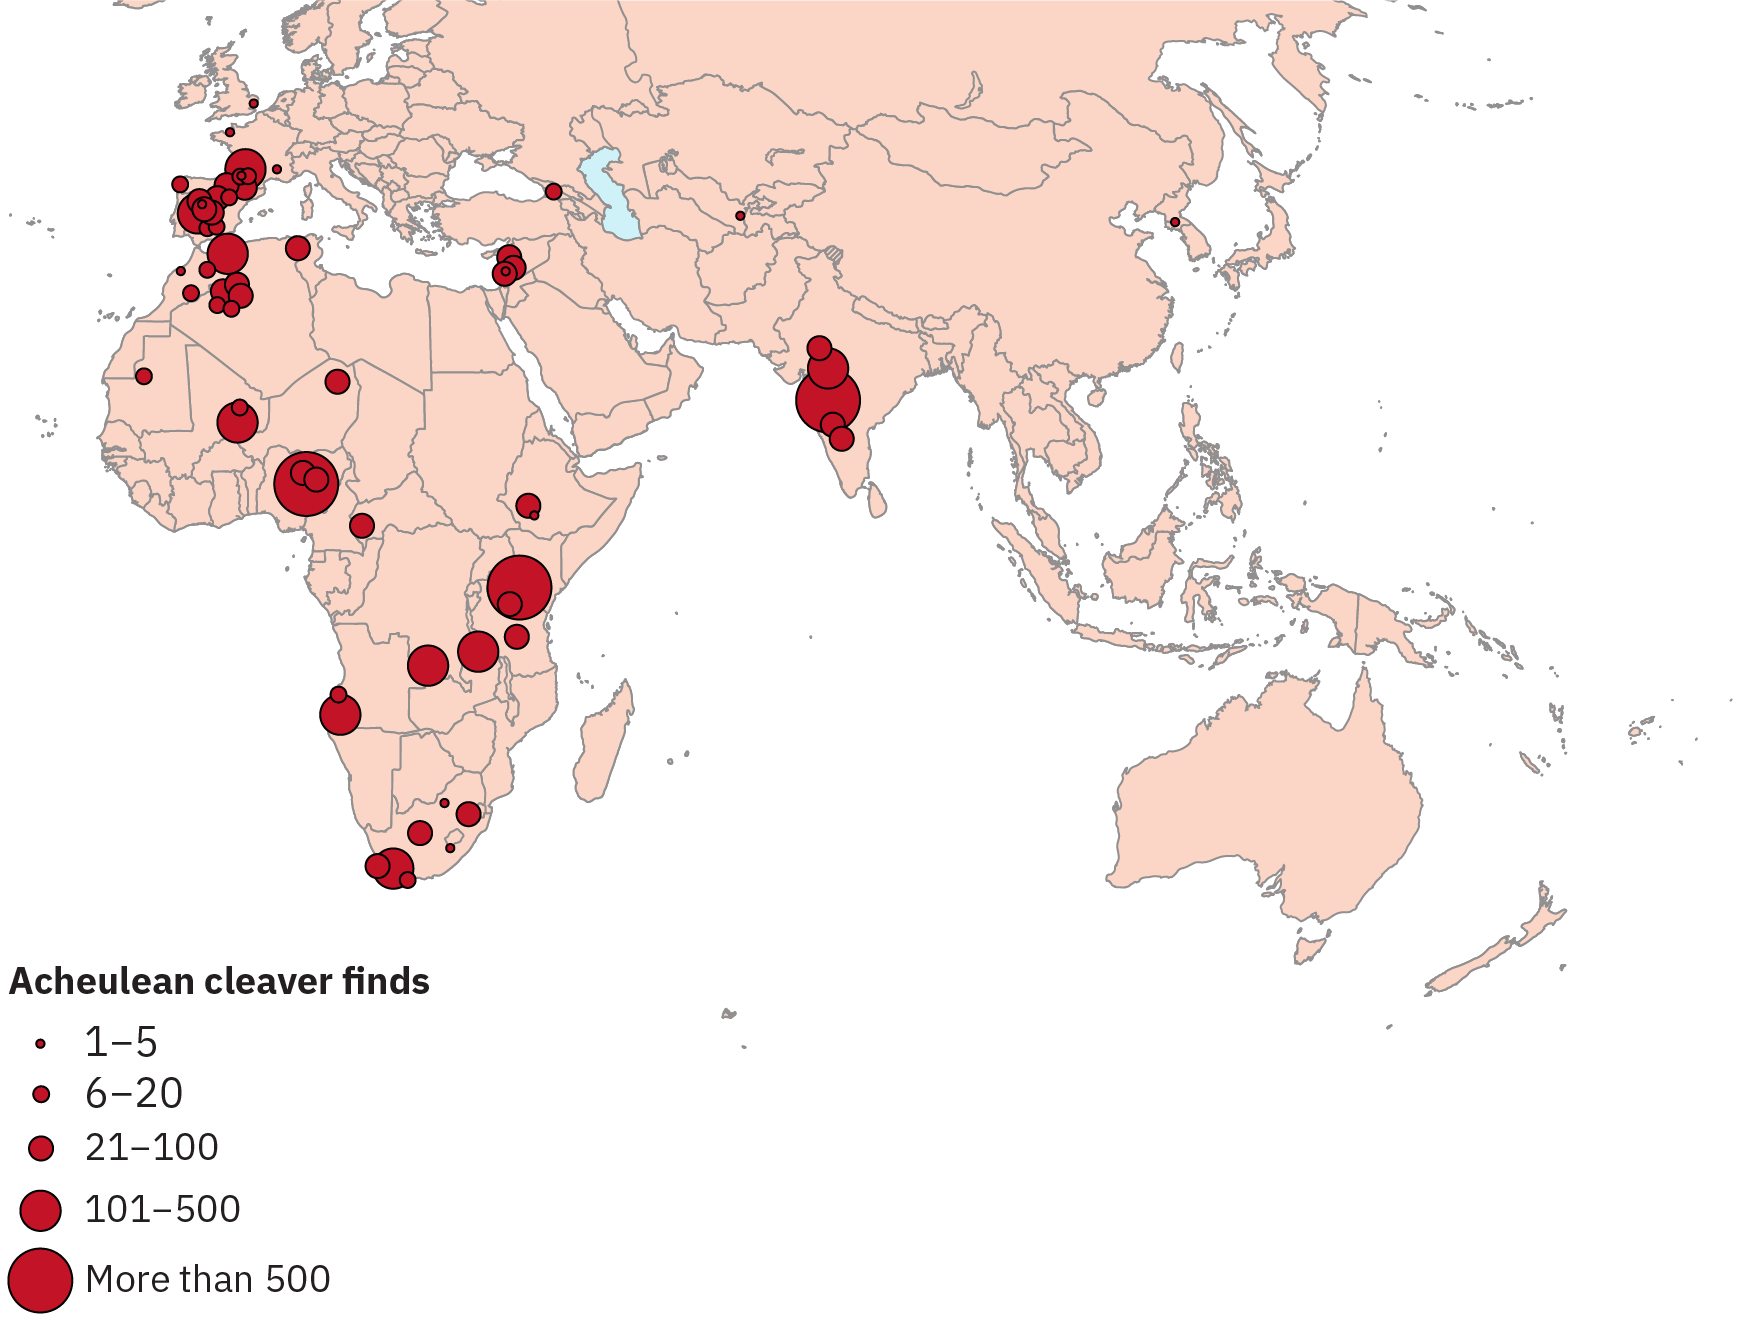 标示在欧洲、亚洲和非洲地图上发现的 Acheulean cleaver 数量的标记。 在西班牙、印度和非洲的某些地区发现了大量发现。